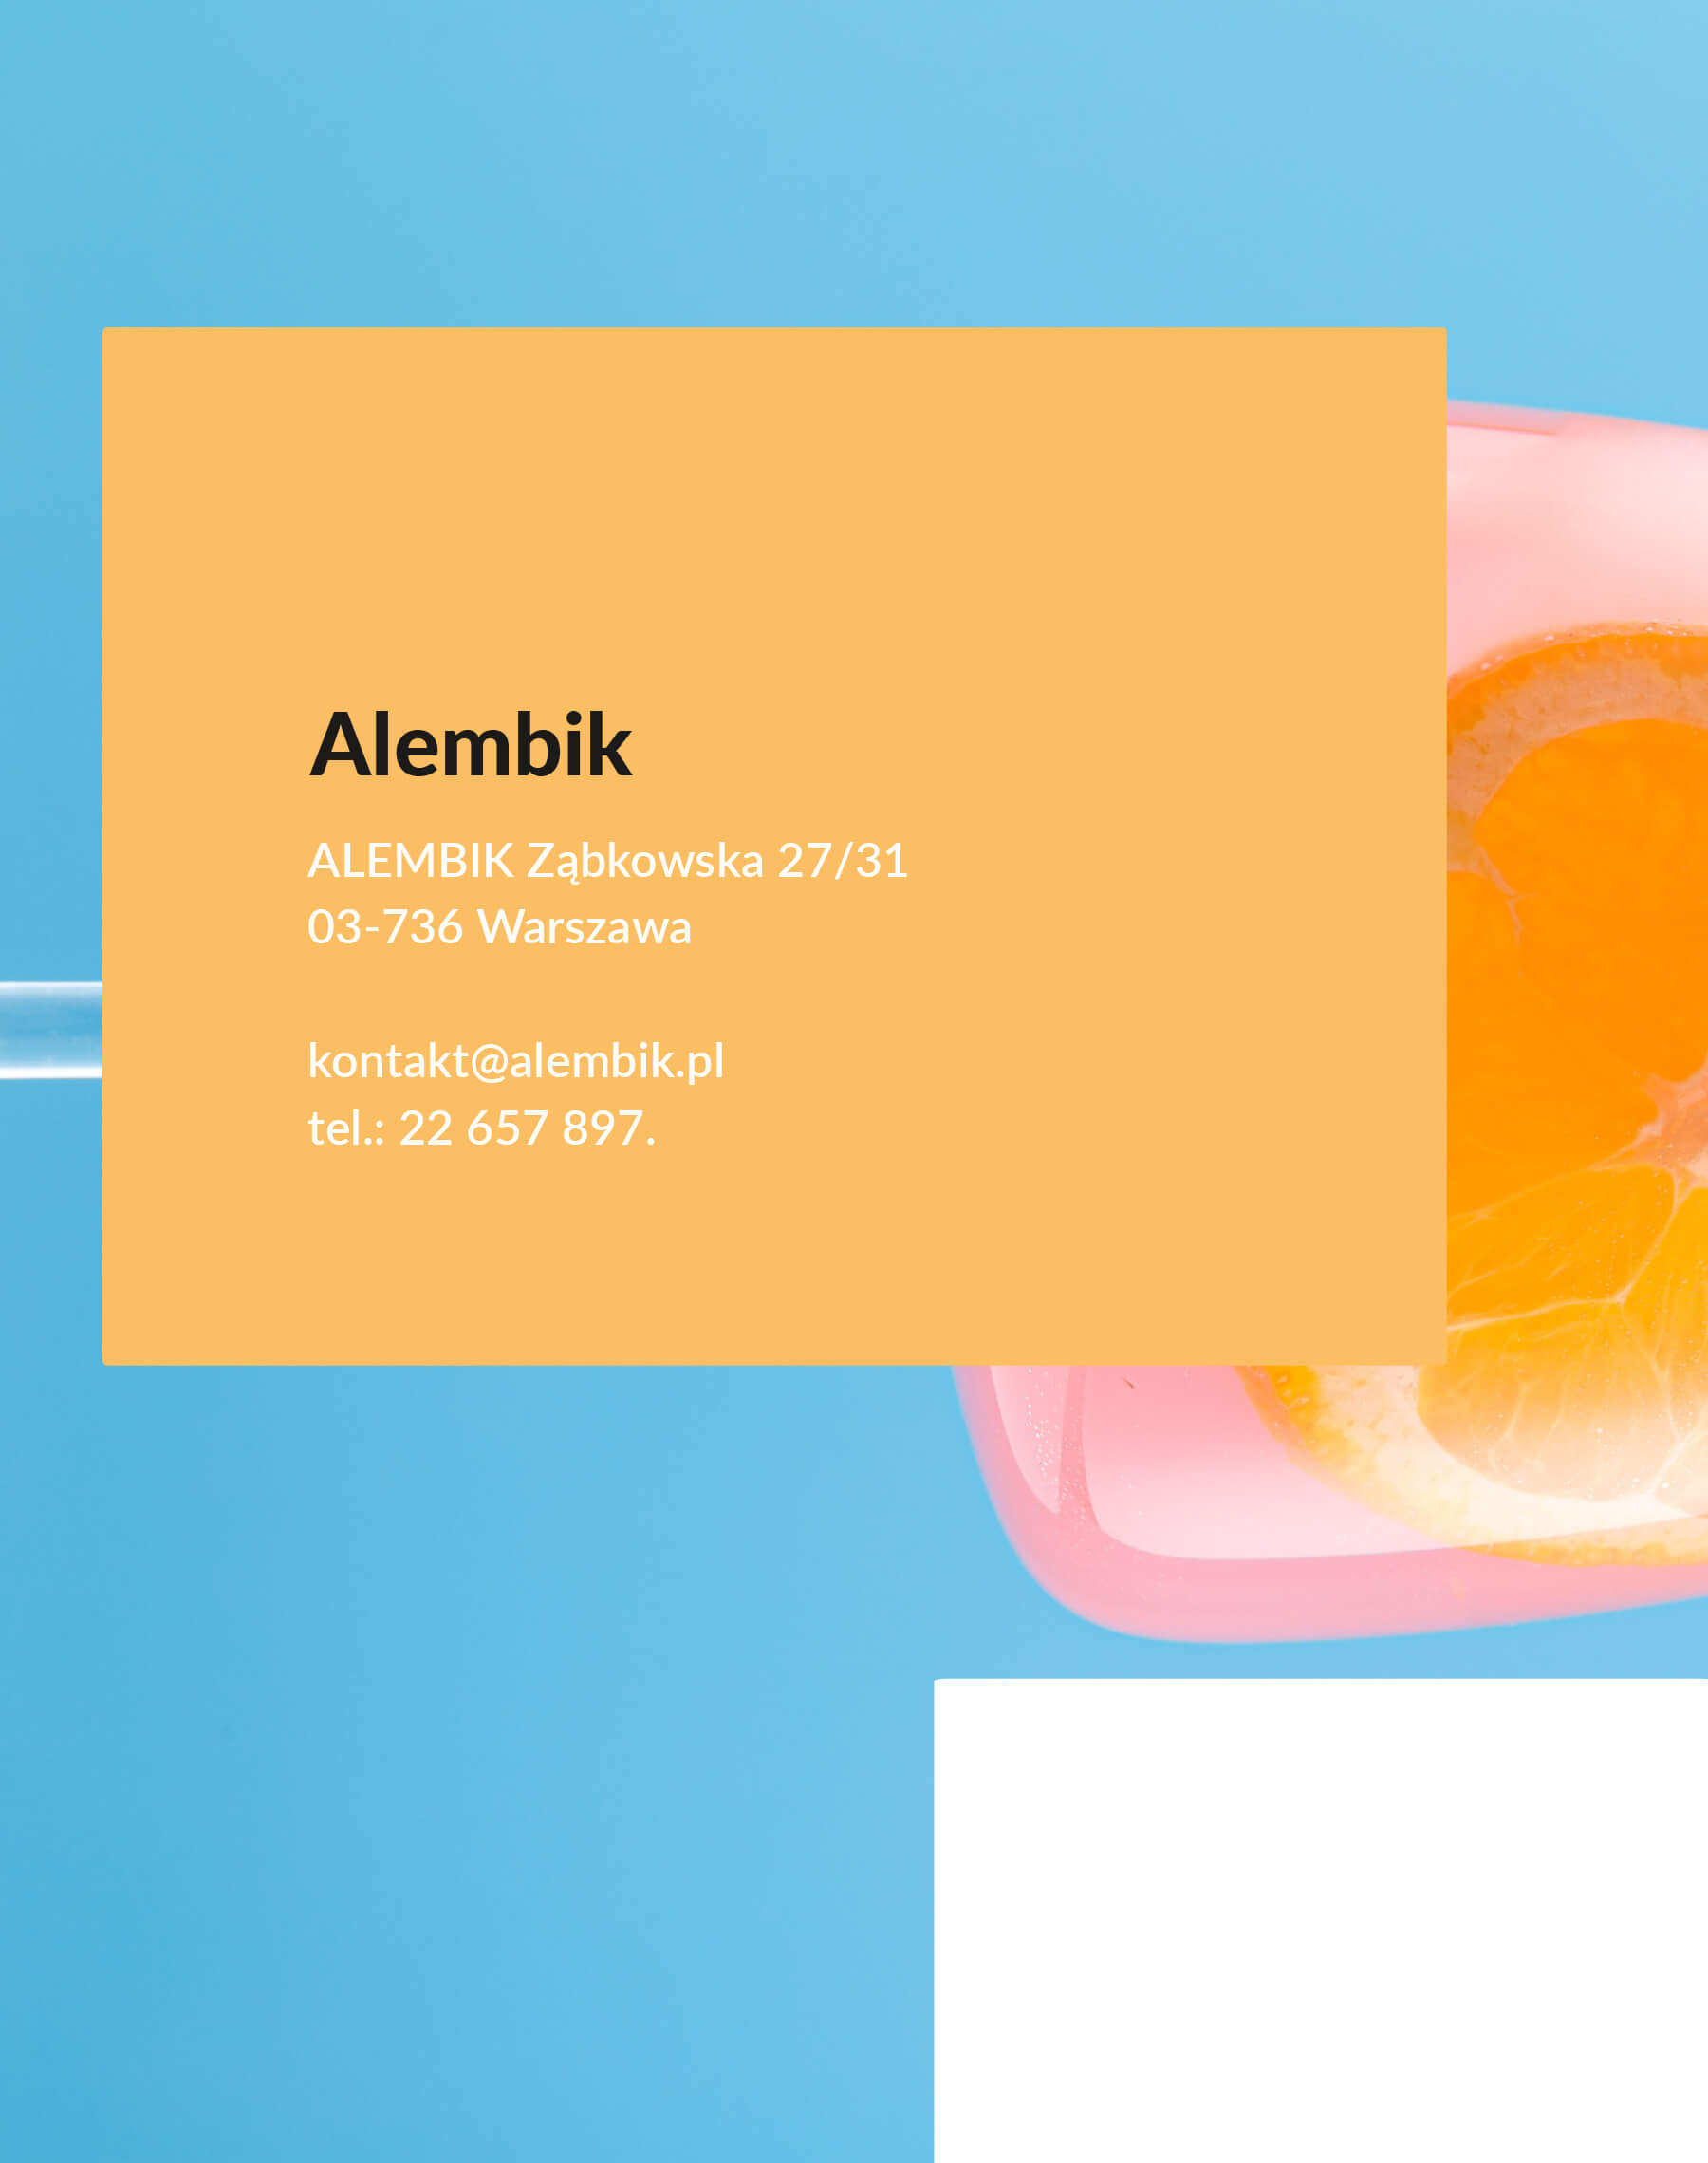 alembik logo info